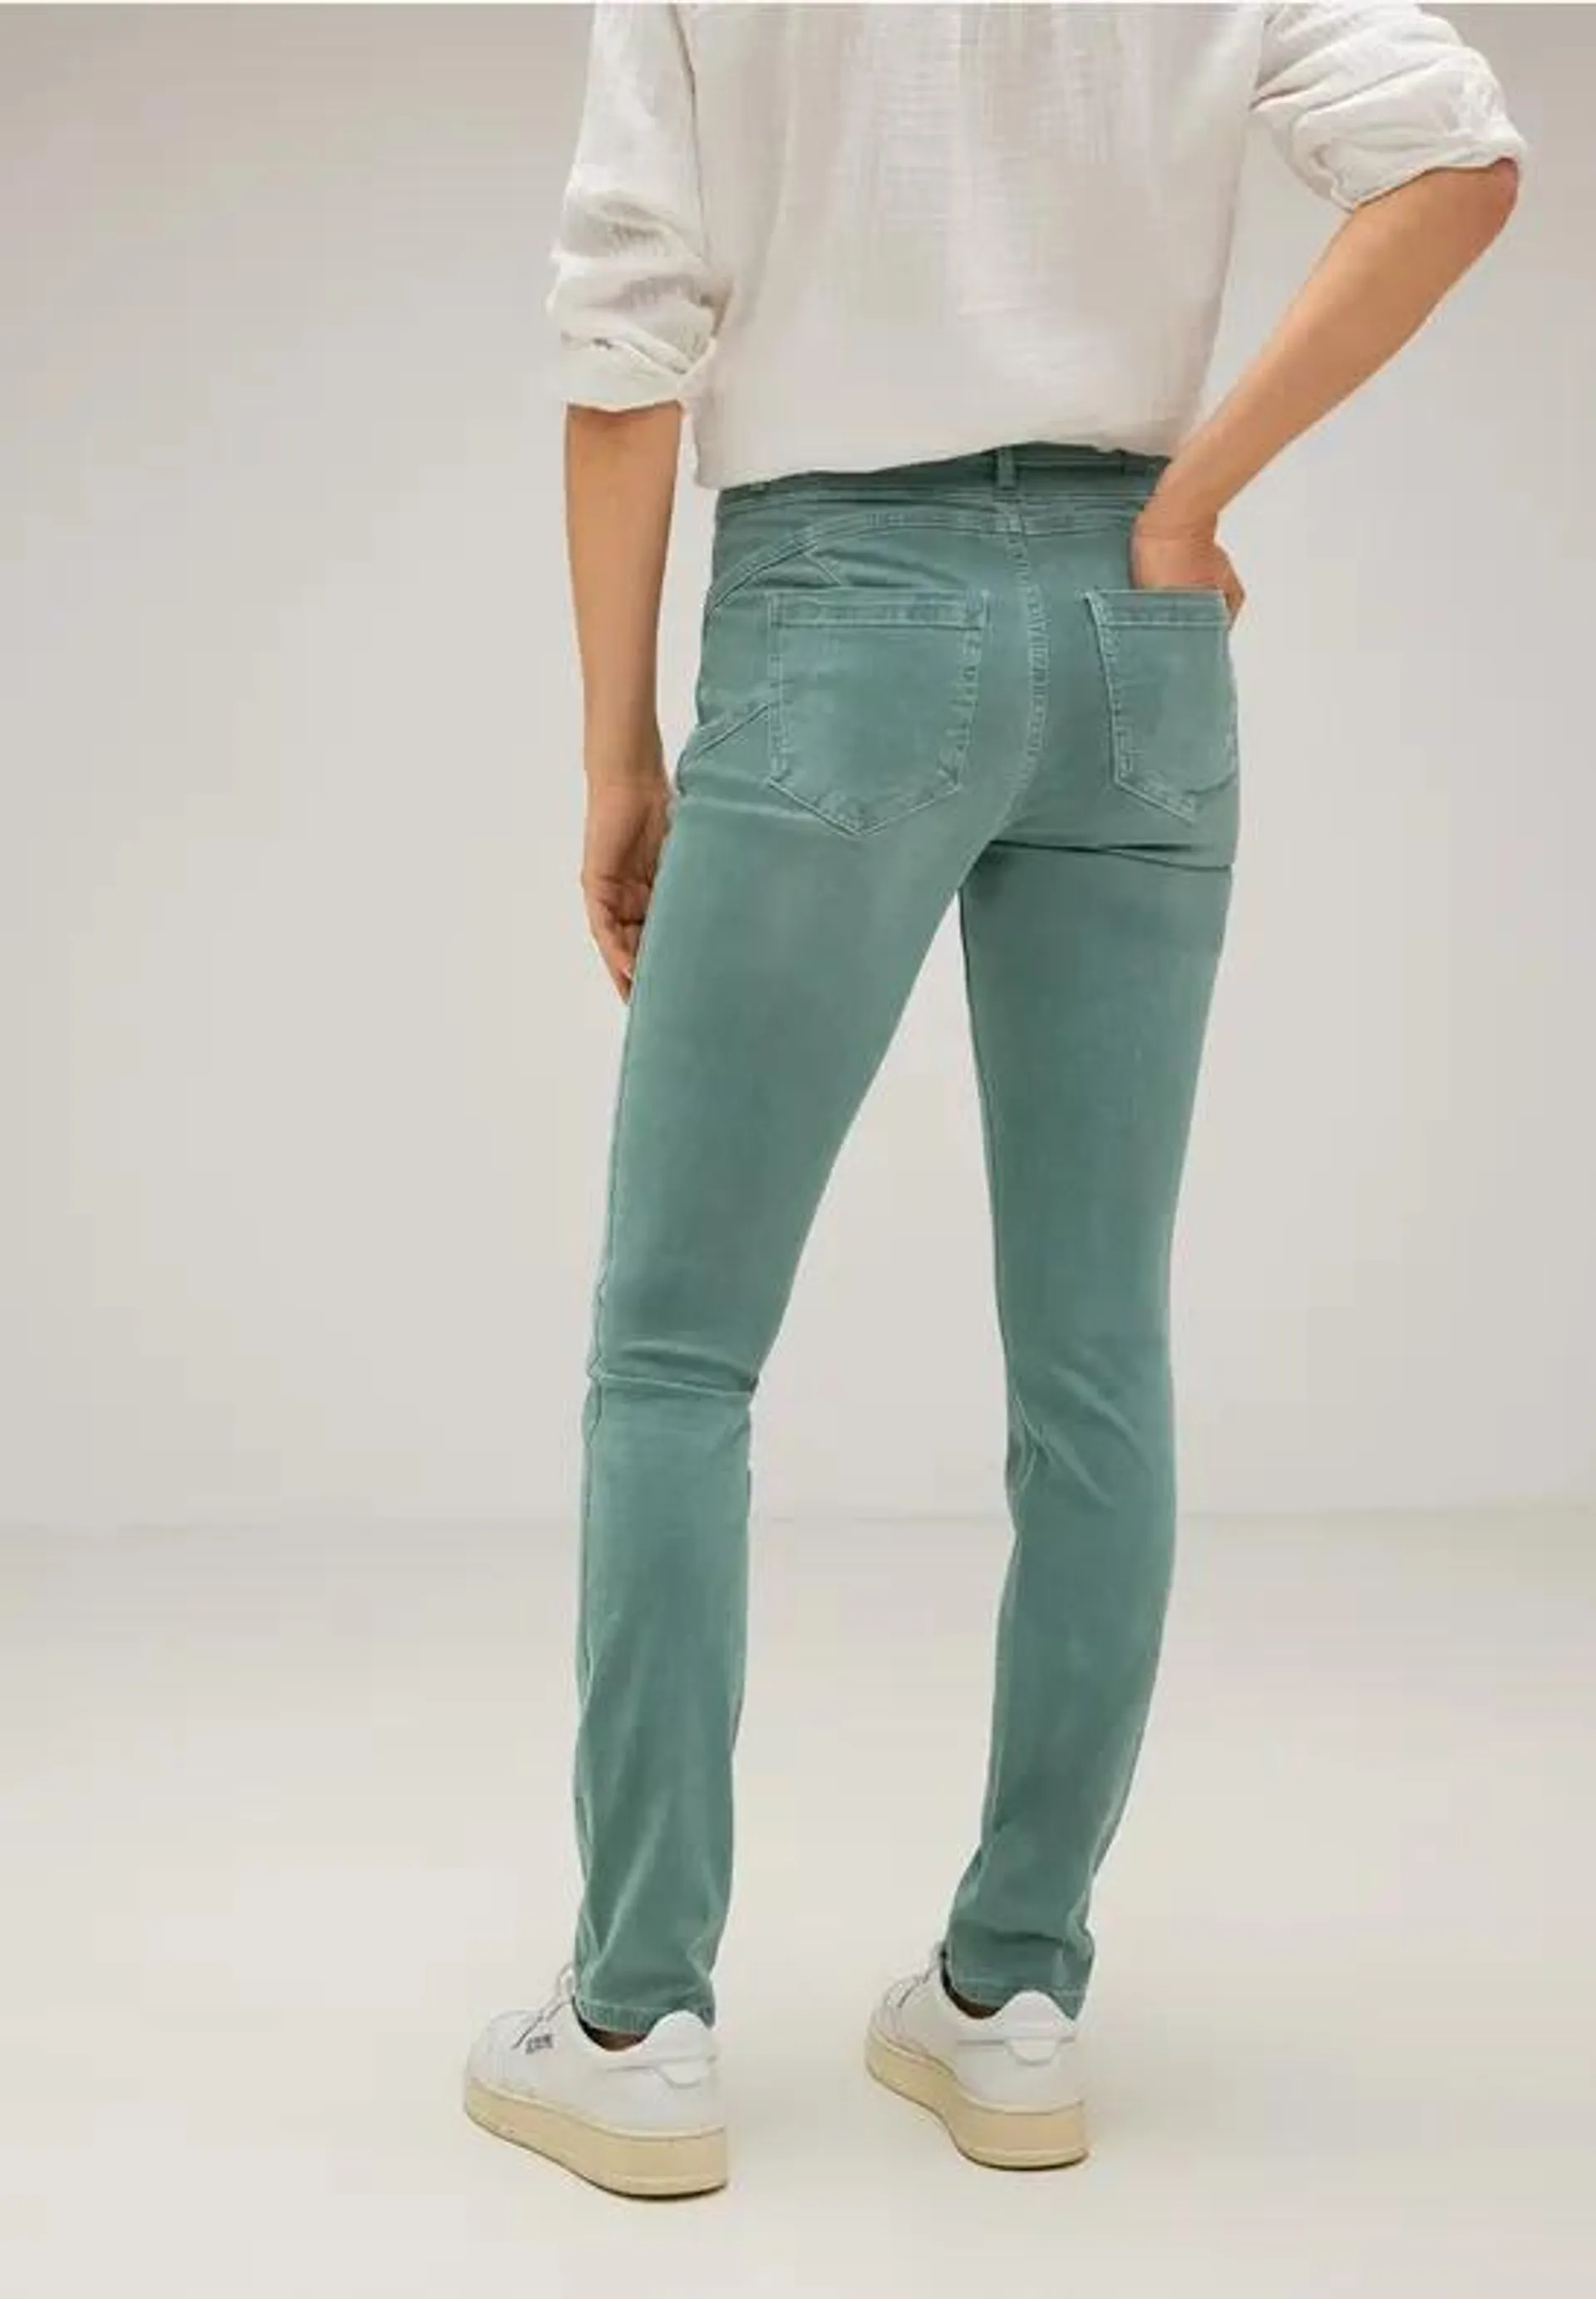 Slim-fit color jeans